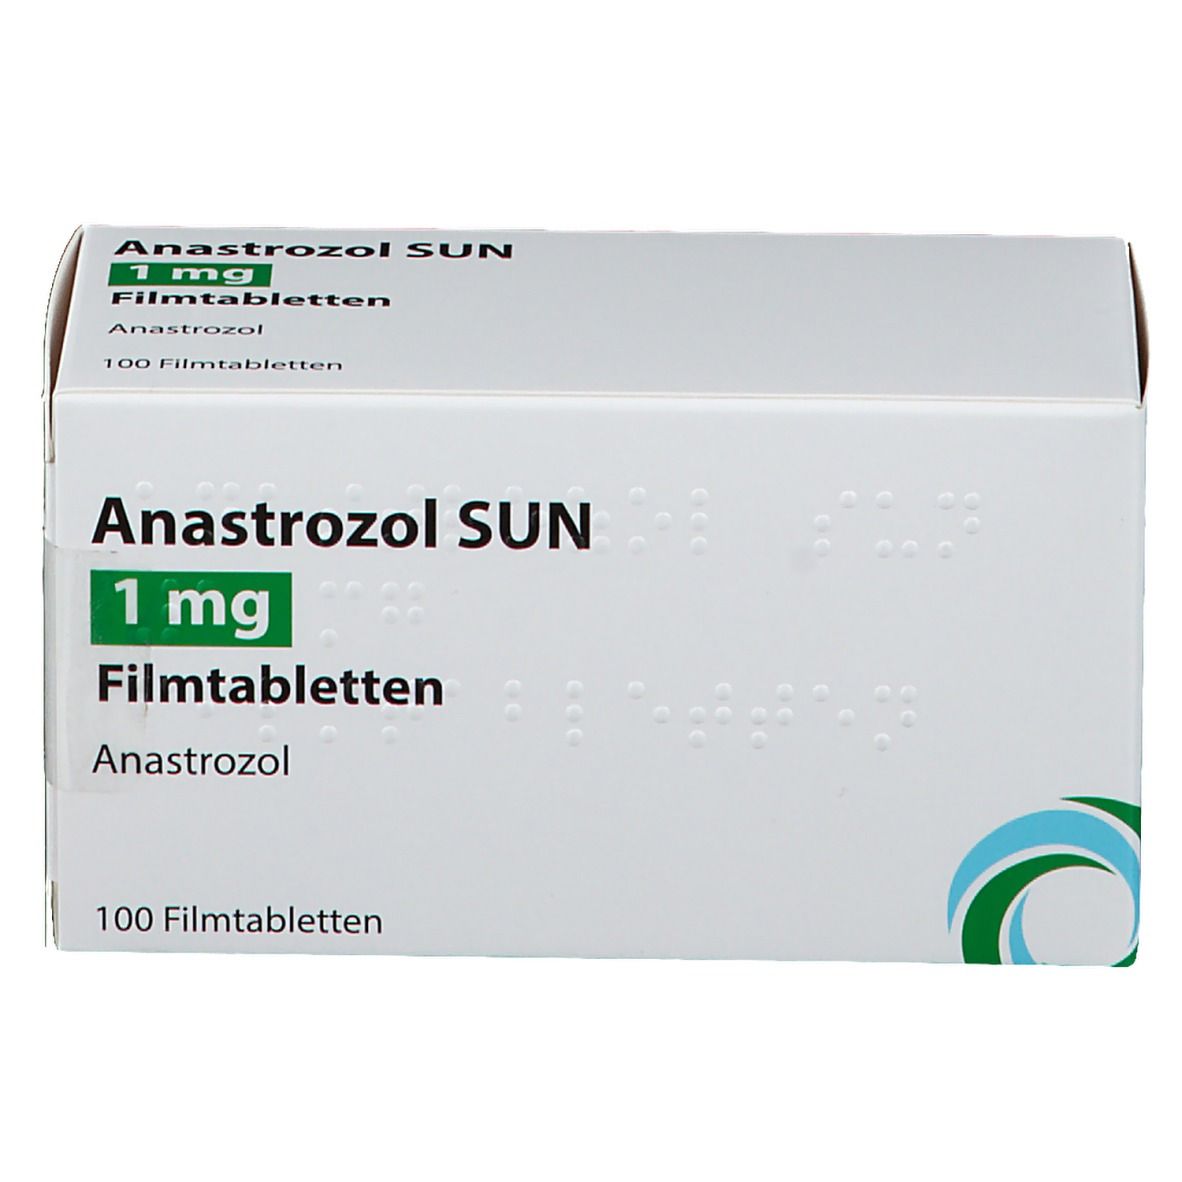 Anastrozol SUN 1 mg